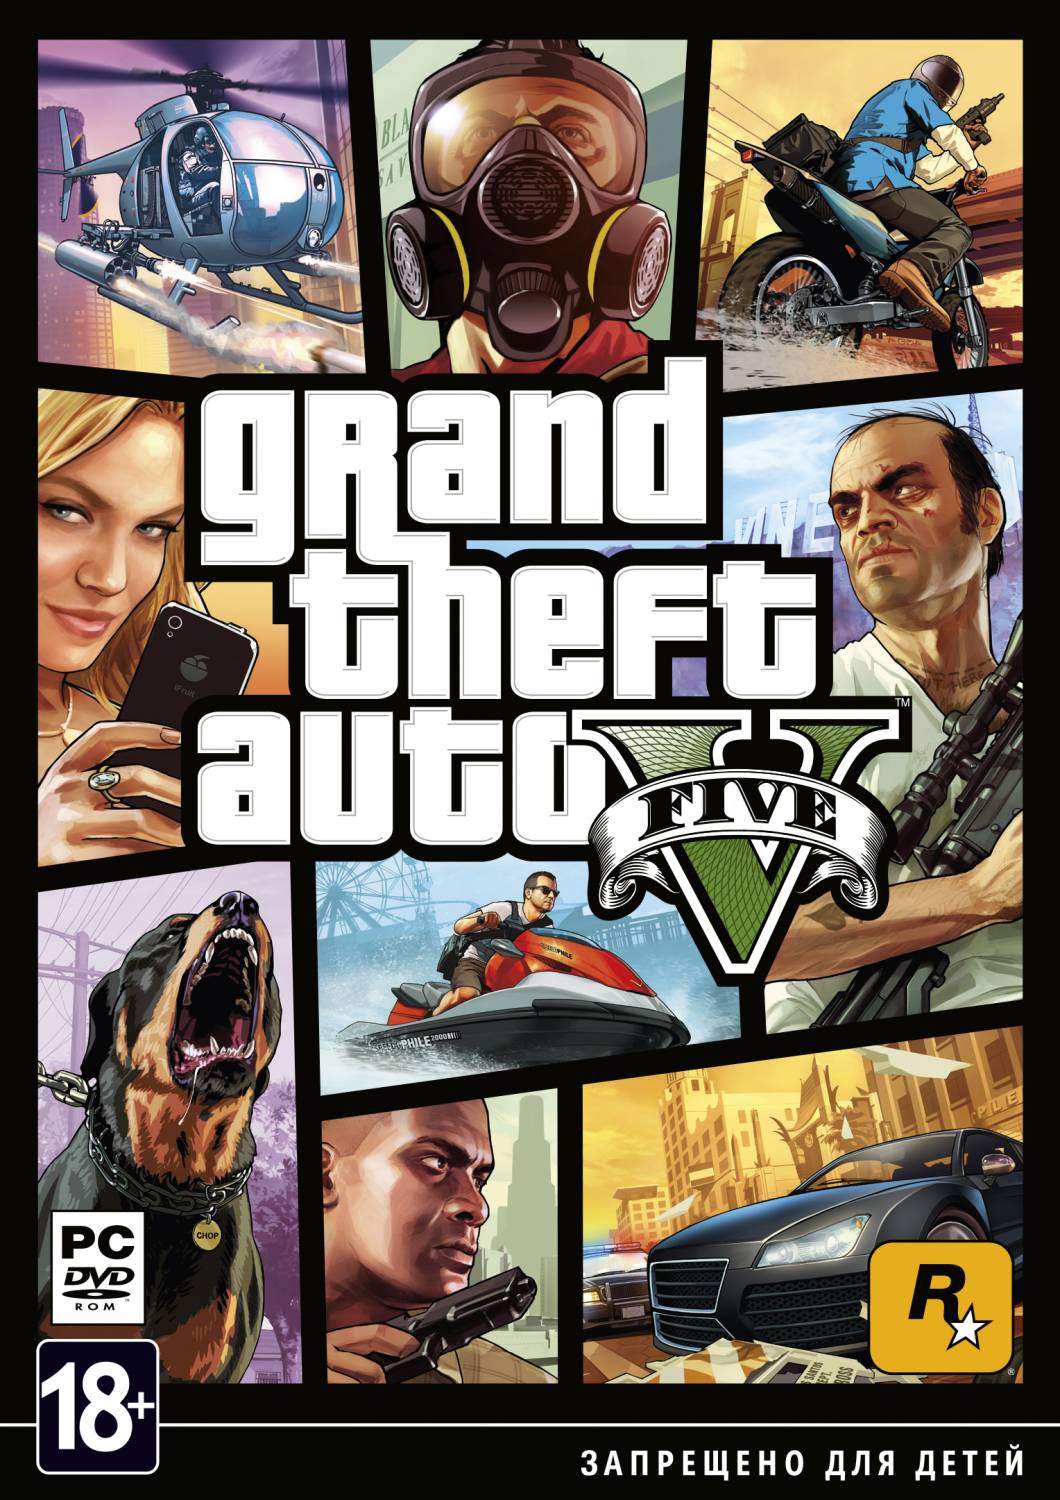 Предварительный заказ цифровой версии Grand Theft Auto V для PC в Rockstar Warehouse